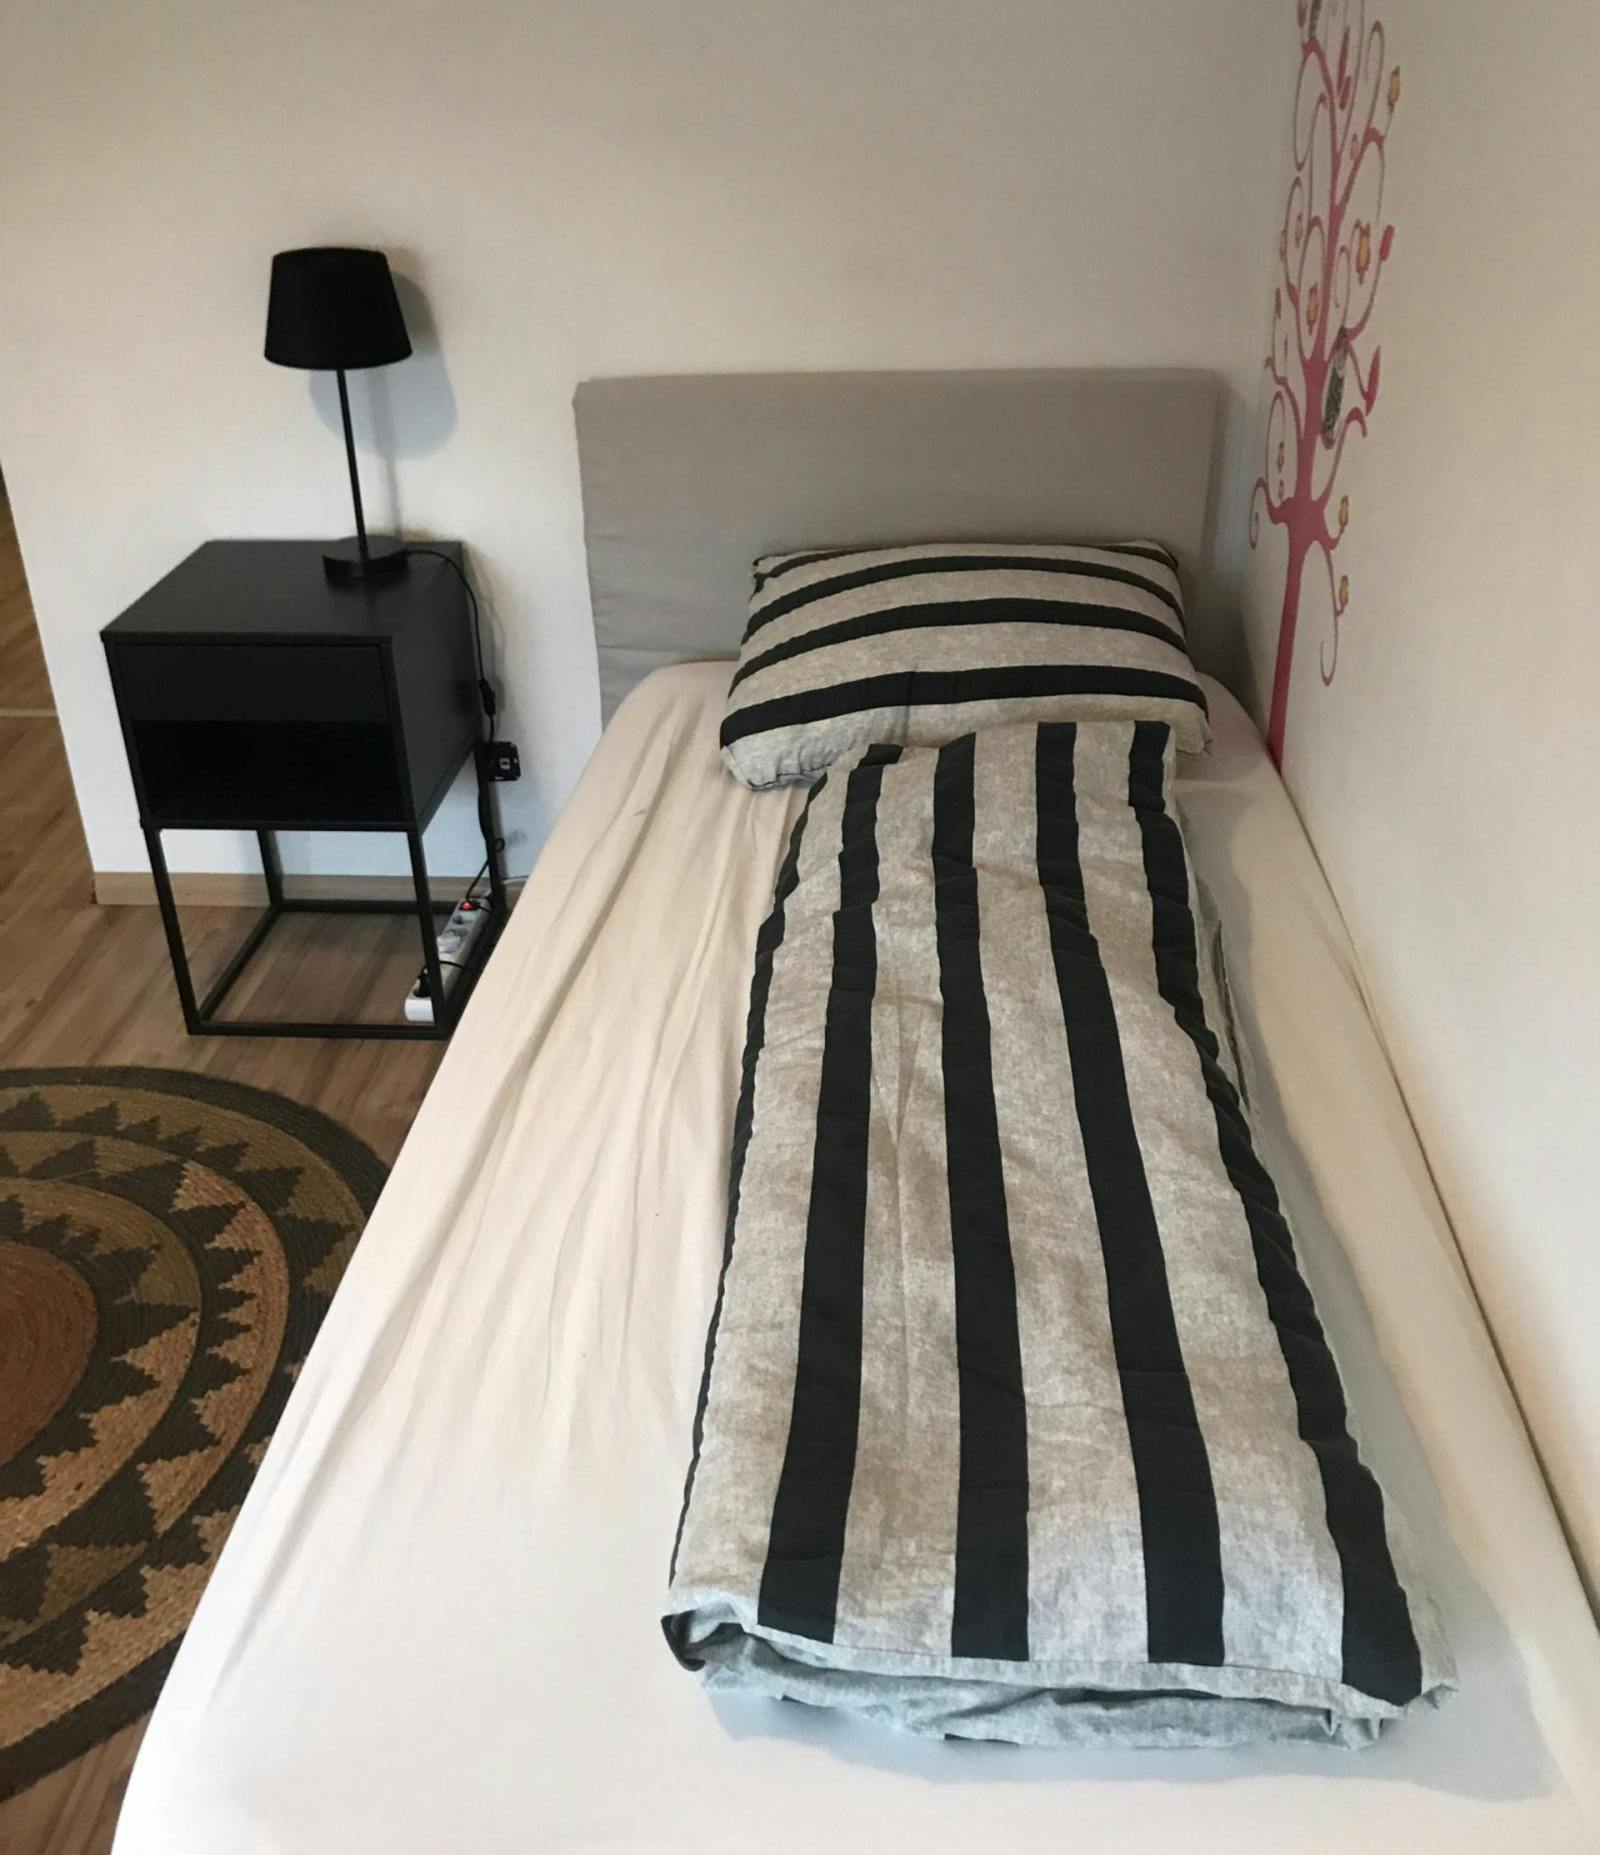 Marvellous 2-bedroom apartment in Stadsdriehoek